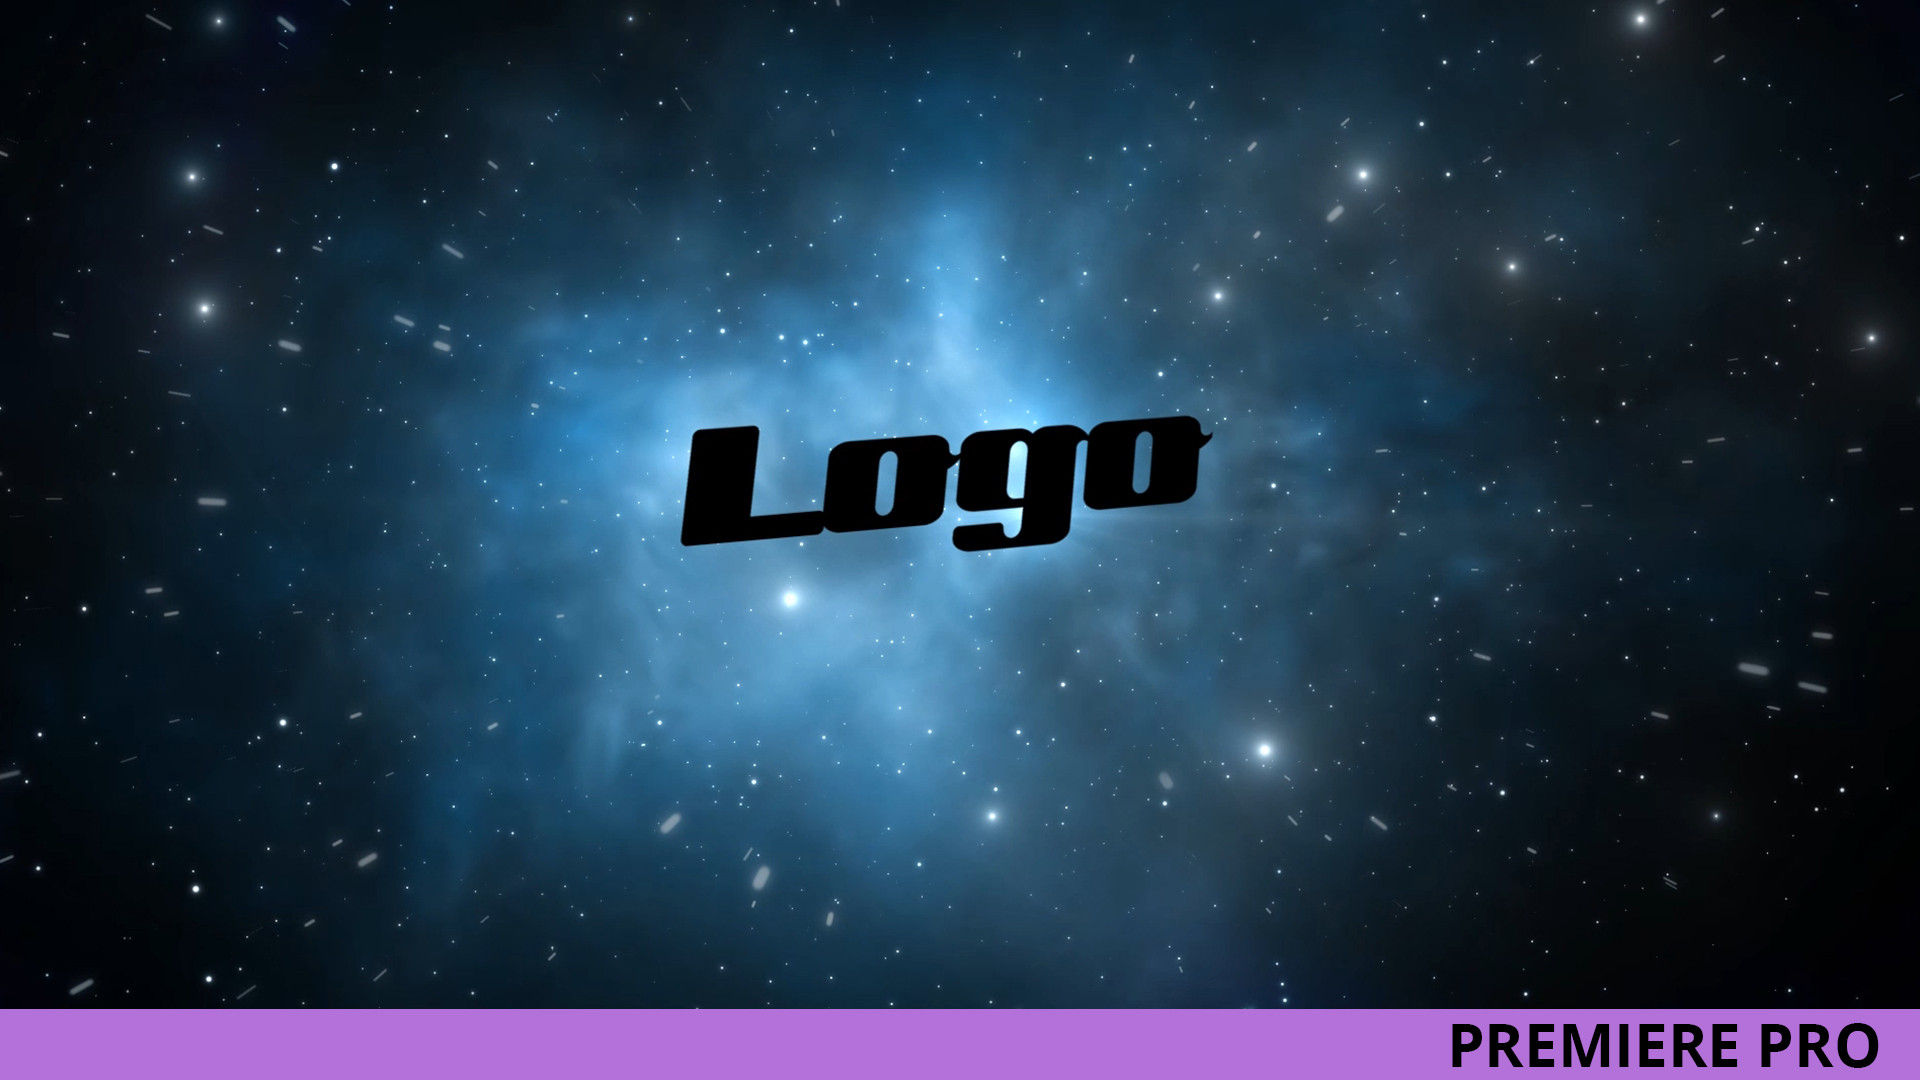 银河系太空标志LOGO展示素材中国推荐PR模板